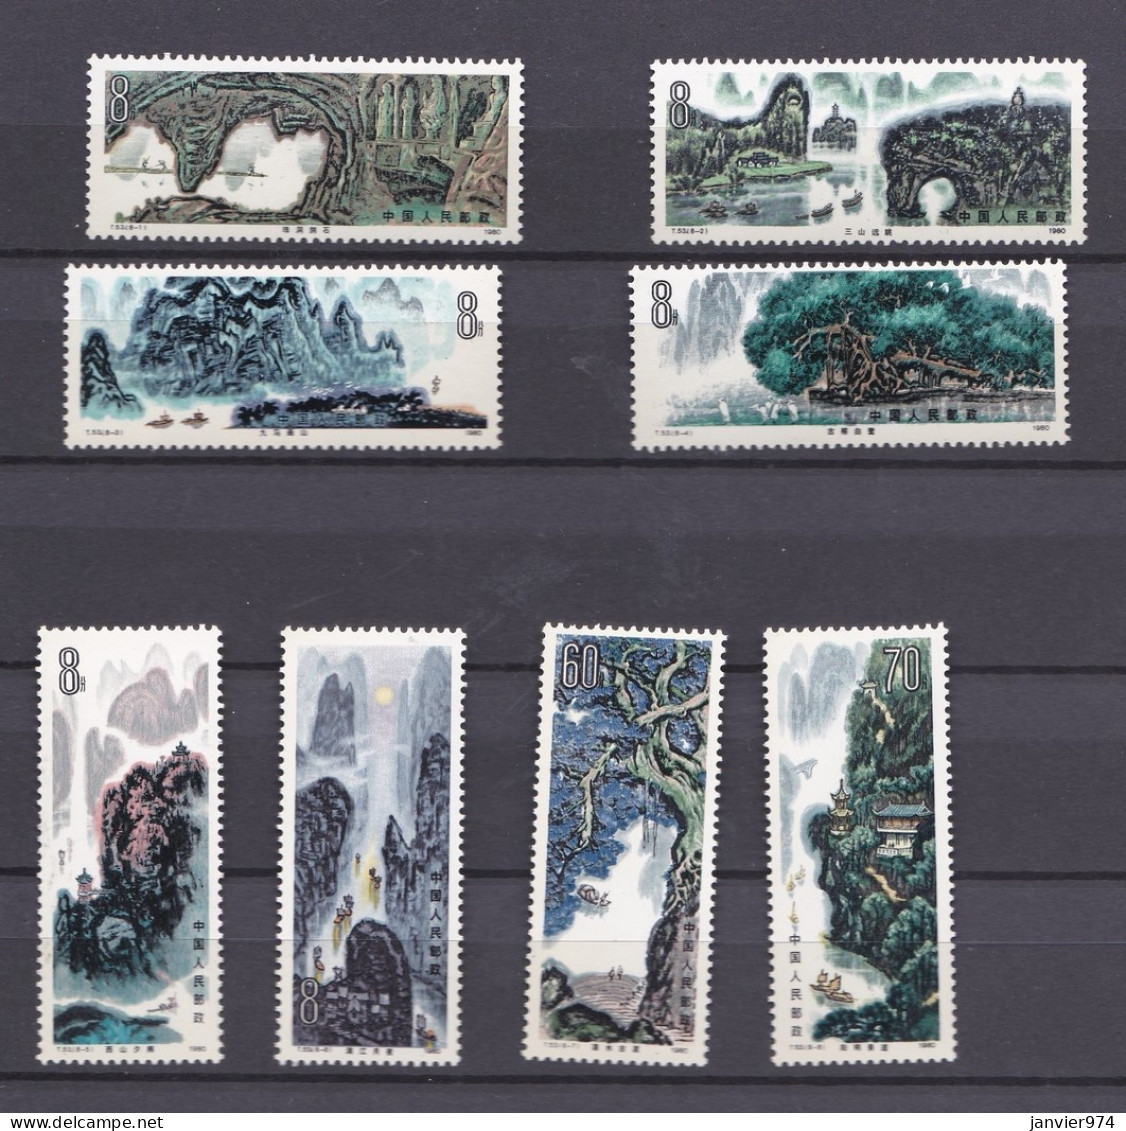 Chine 1980 , La Serie Complete Peintures De Paysages De Guilin, 8 Timbres Neufs  N° 1629 - 1636 - Nuovi